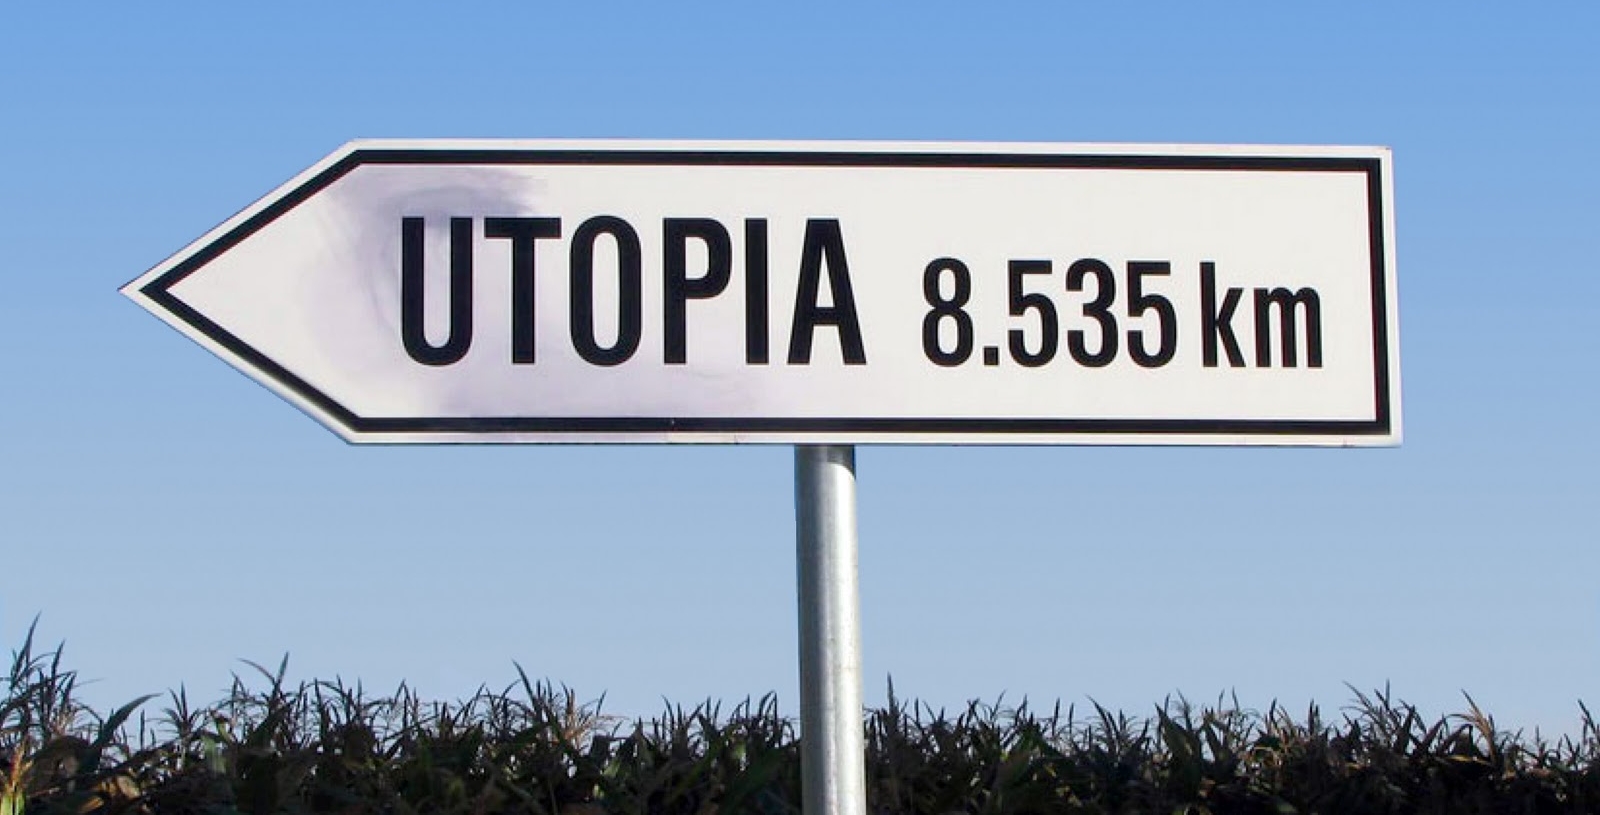 Utopia2.jpg